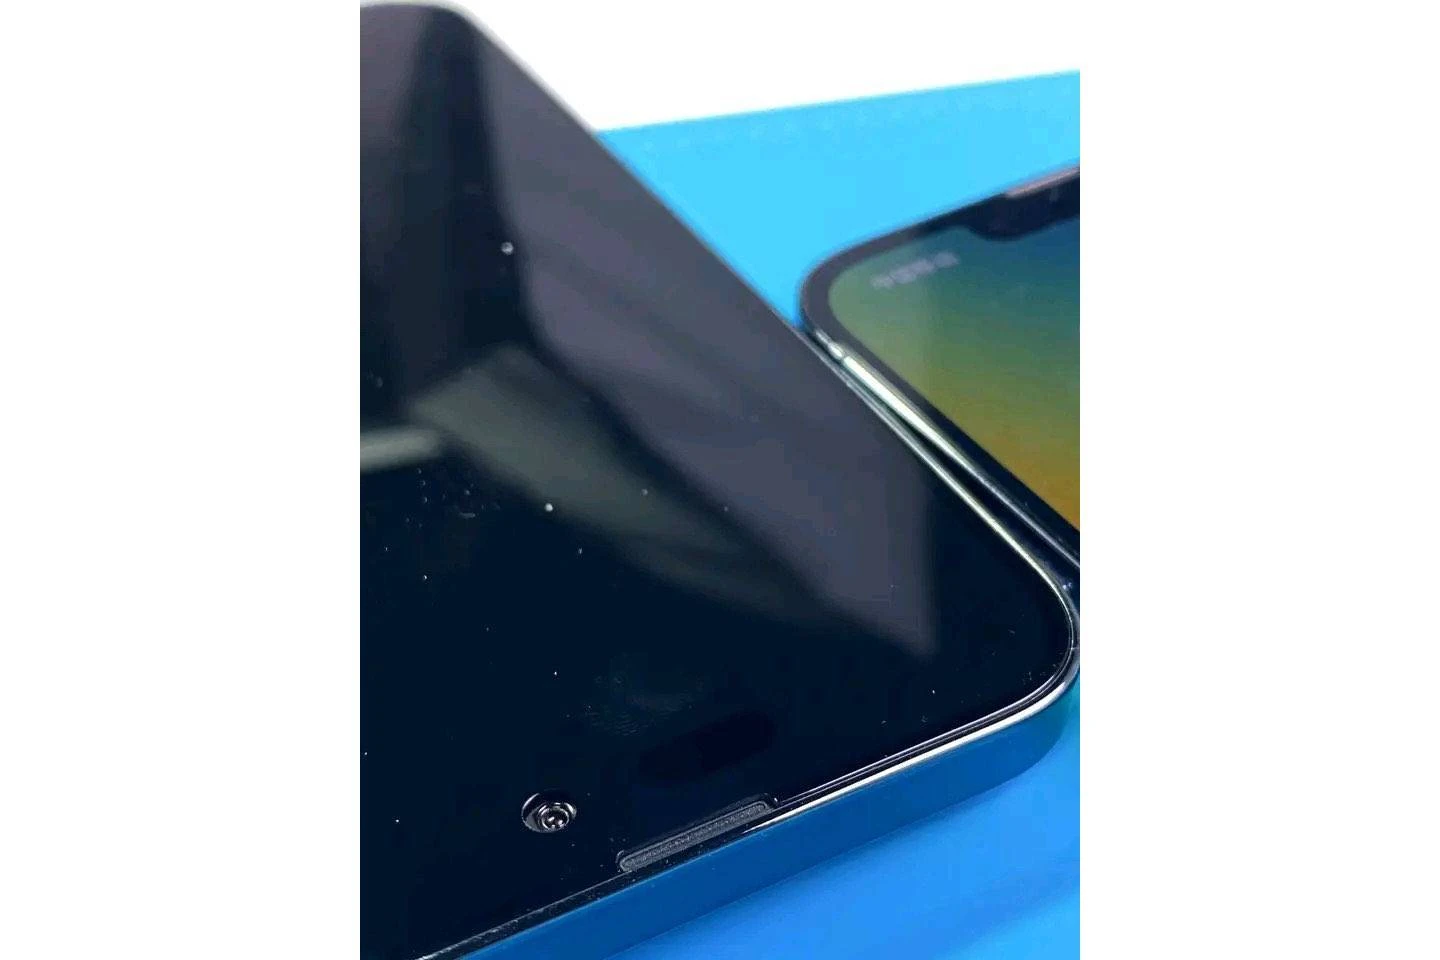 iPhone 14 Pro Max sẽ có hình viên thuốc và lỗ khoét thay vì notch